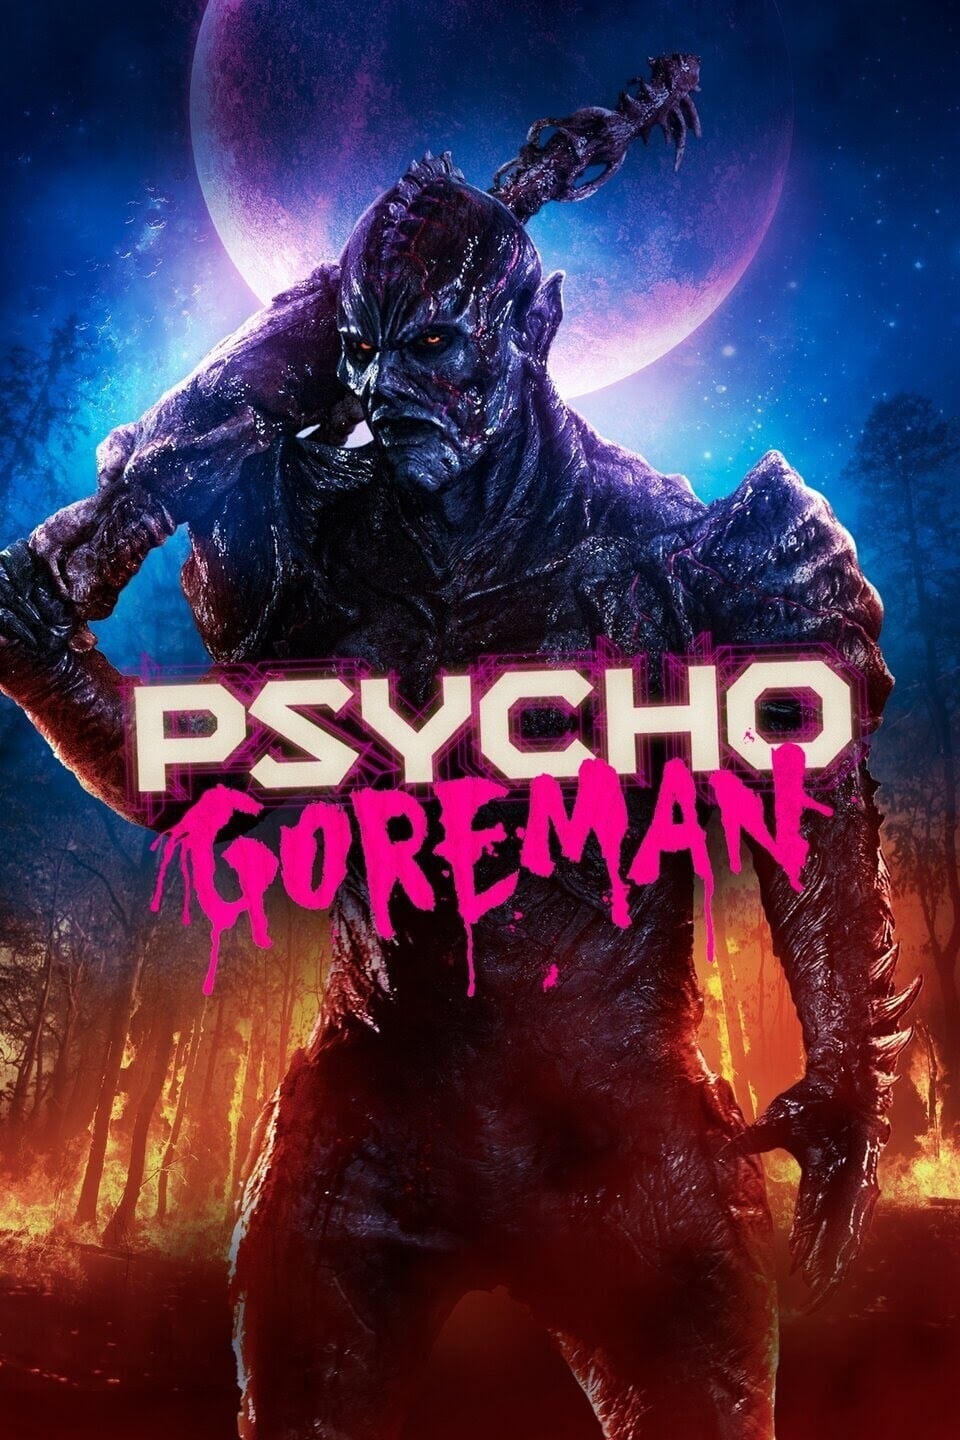 دانلود فیلم Psycho Goreman 2020